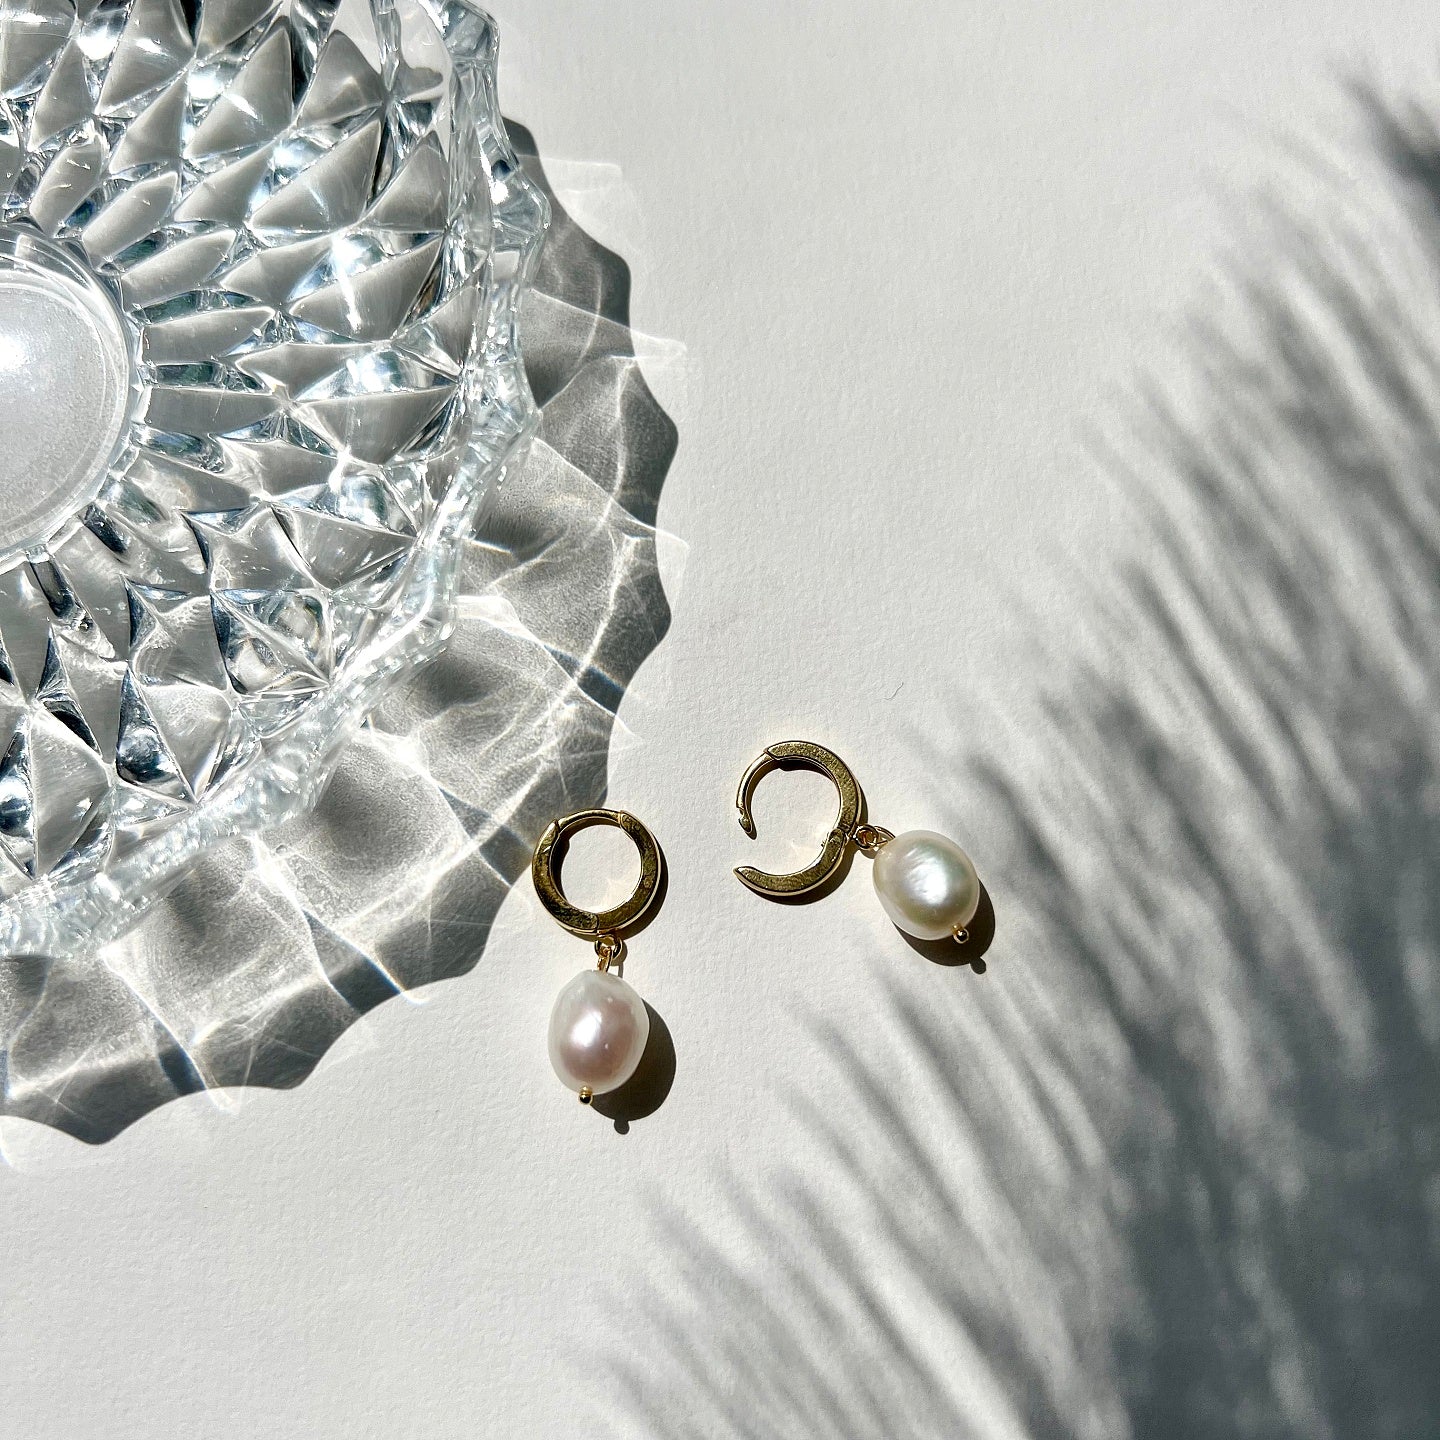 Cercei argint cu perla Unreal Beauty - placati aur galben 18K